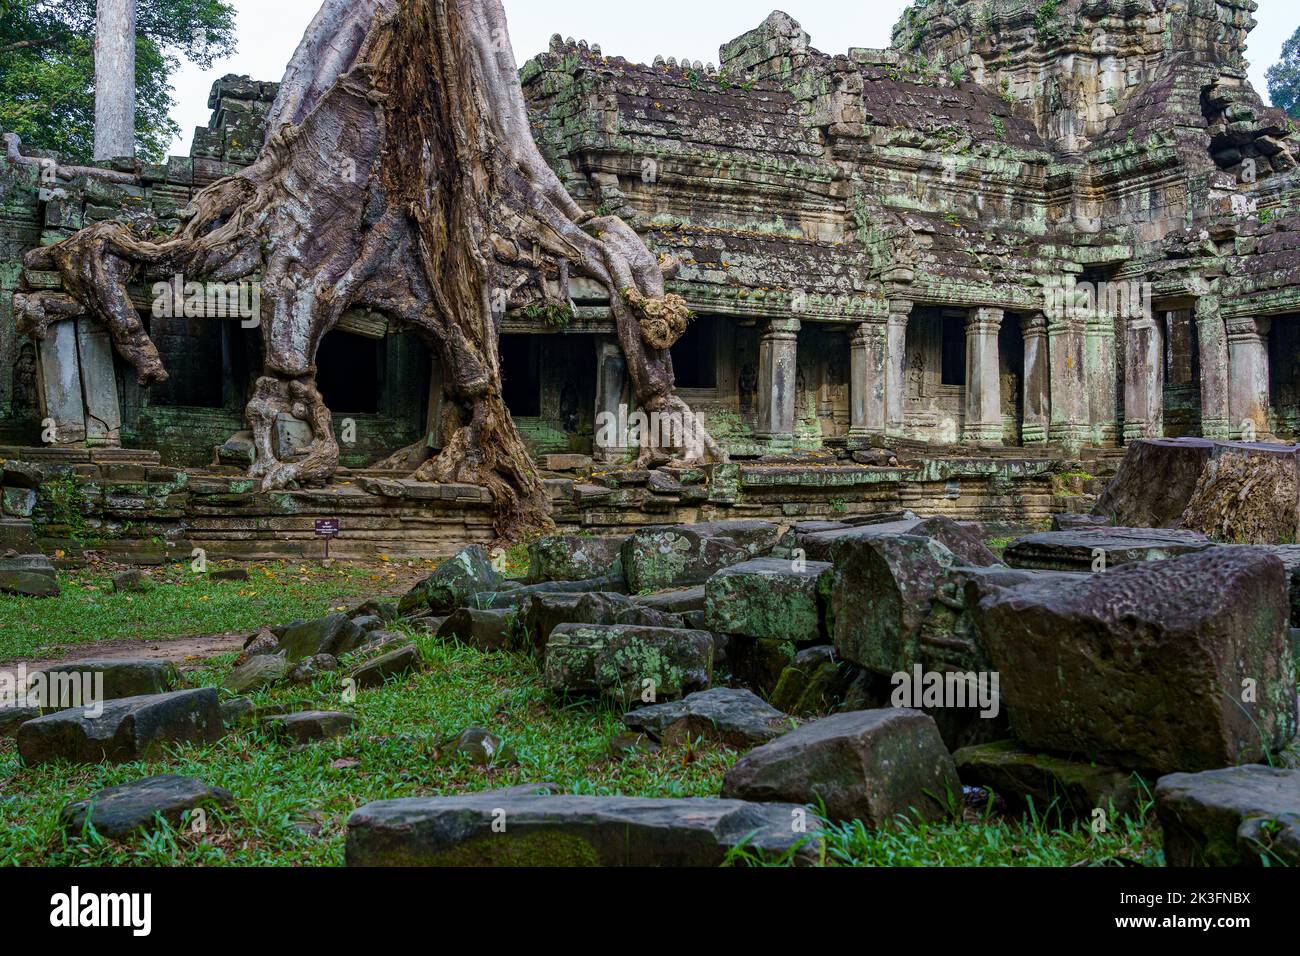 Cambodge. Siem Reap. Le parc archéologique d'Angkor. Arbre de la racine de banyan Tree surpoussant des parties de l'ancien temple hindou du 12th siècle de Preah Khan Banque D'Images